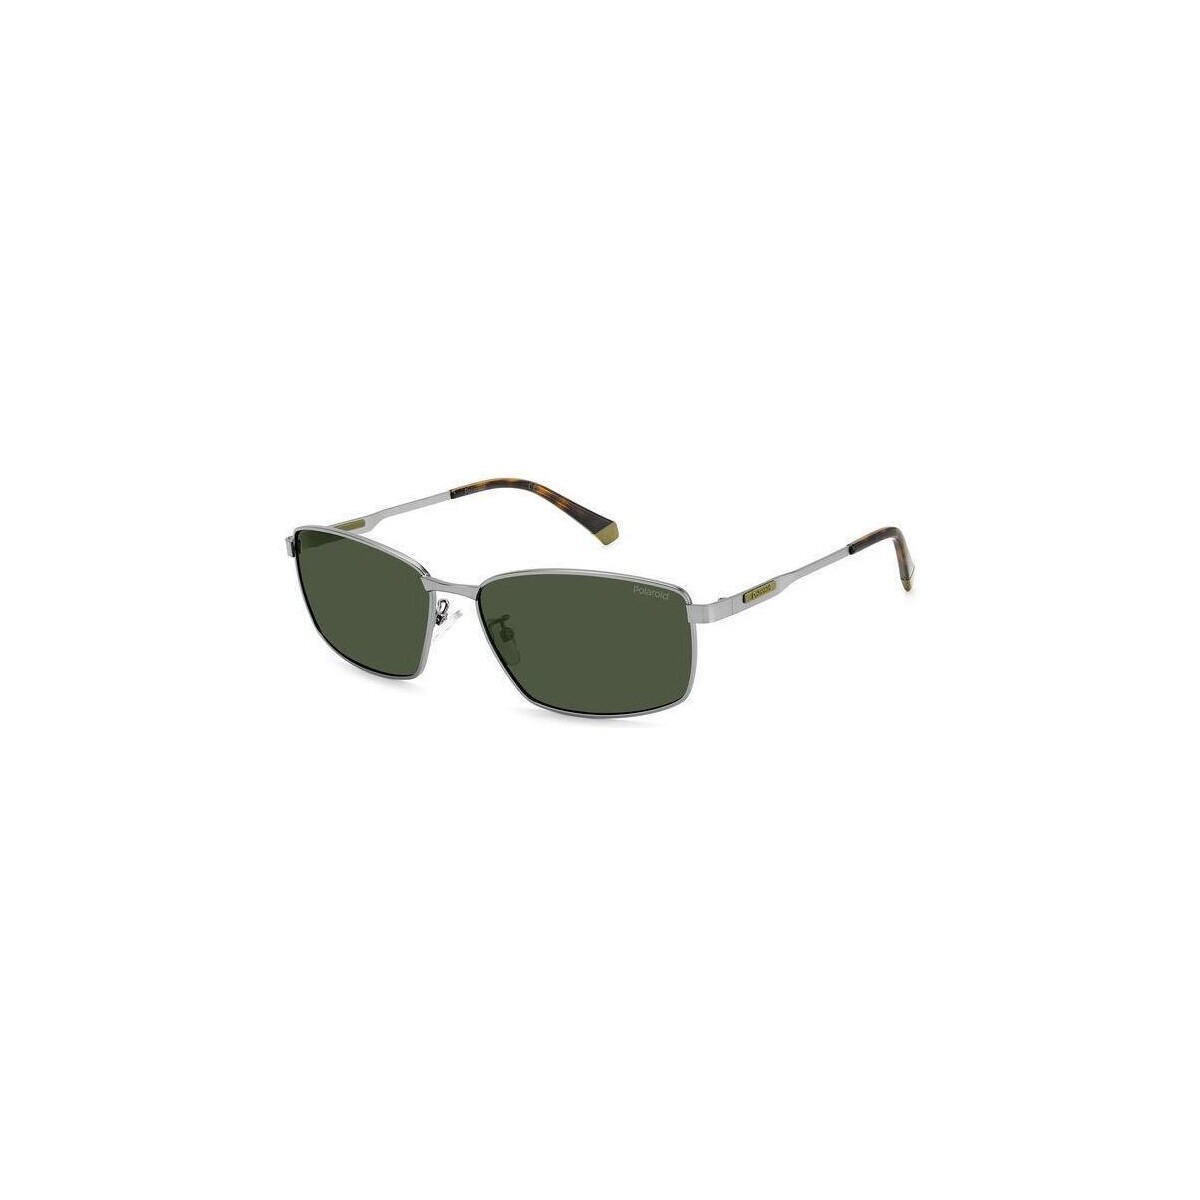 Orologi & Gioielli Uomo Occhiali da sole Polaroid PLD 2137/G/S/X Occhiali da sole, Argento Opaco/Verde, 60 mm Altri